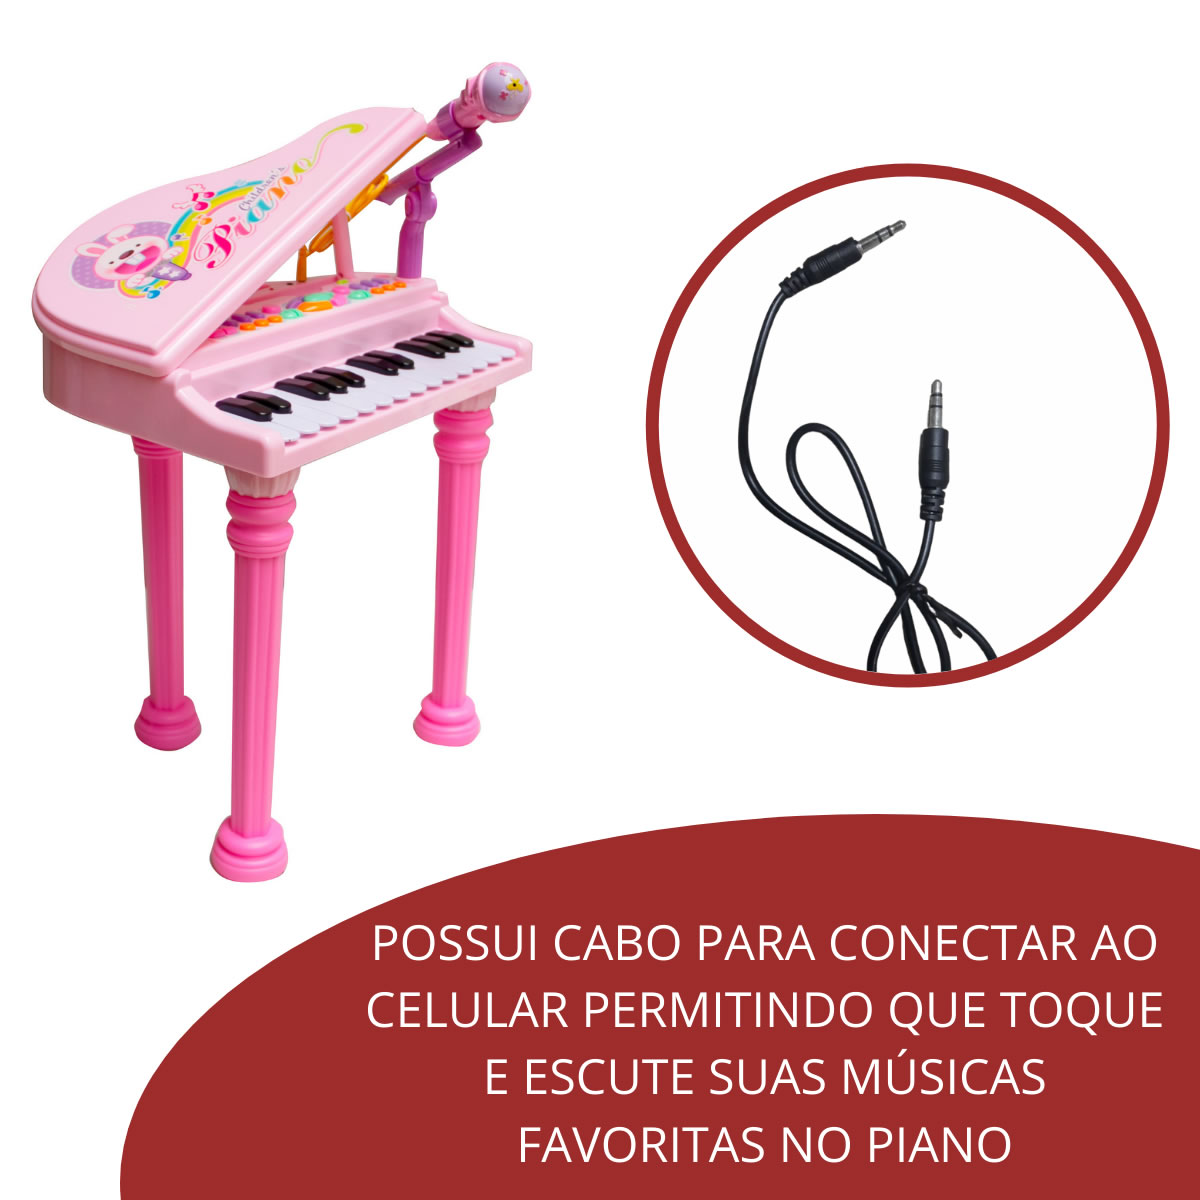 Teclado Músical Infantil C/ Banqueta Importway BW151RS Rosa - Rosa